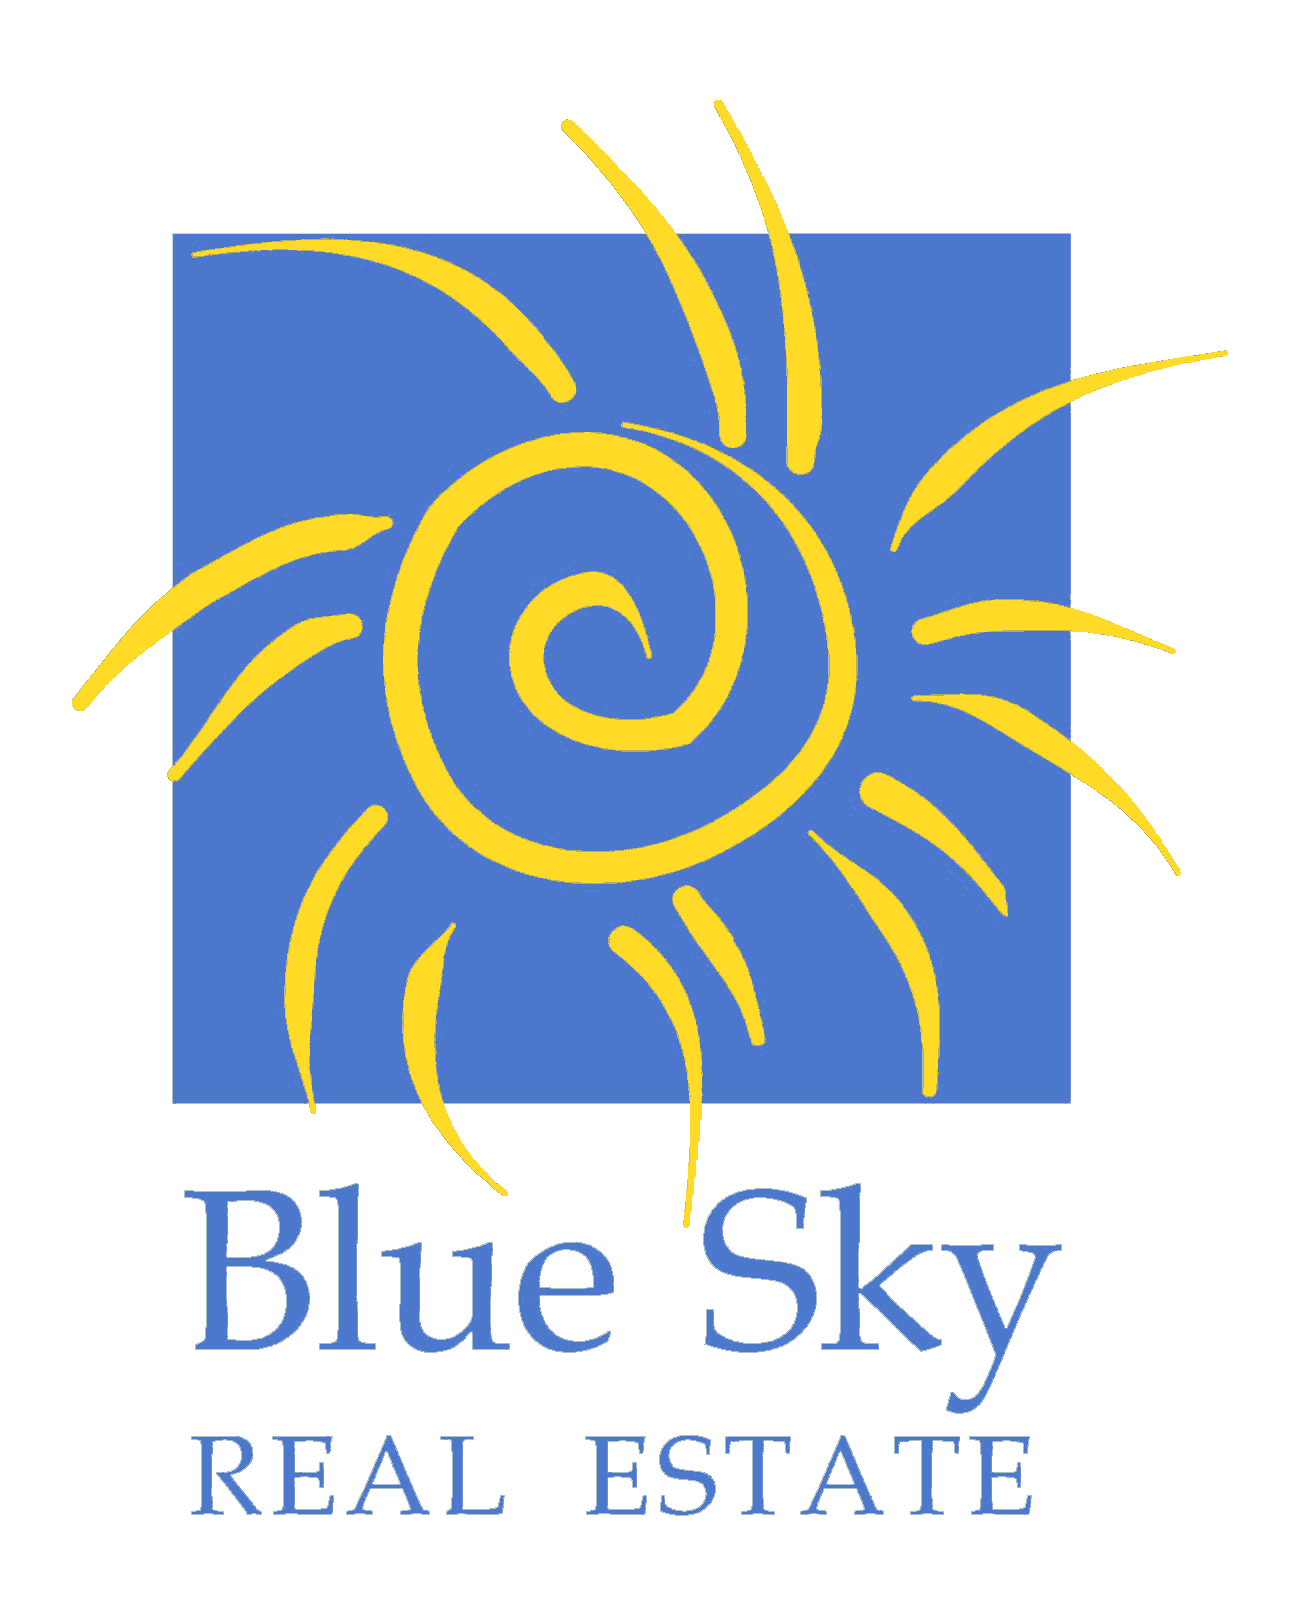 Bluesky.logo.png